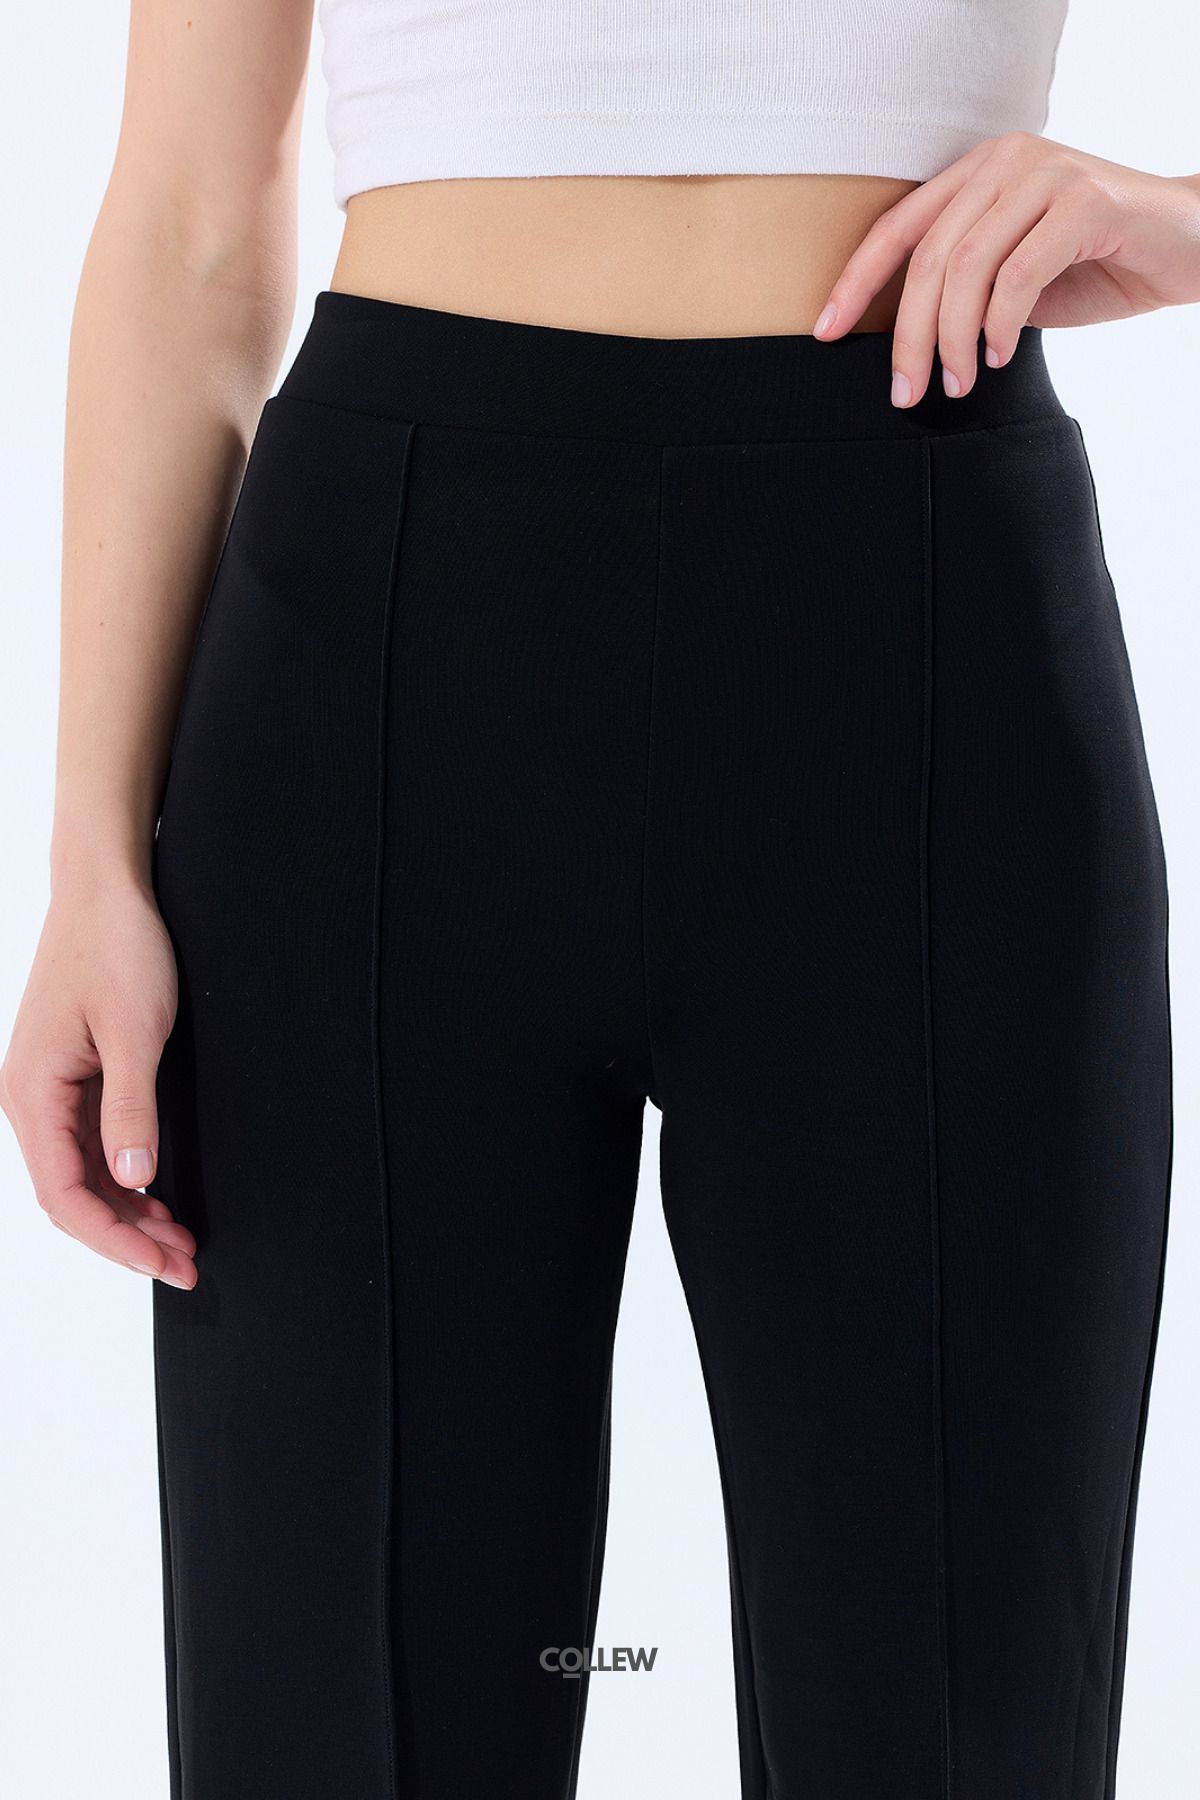 COLLEW Kadın Siyah Normal Bel Önü Çımalı Modal Pantolon